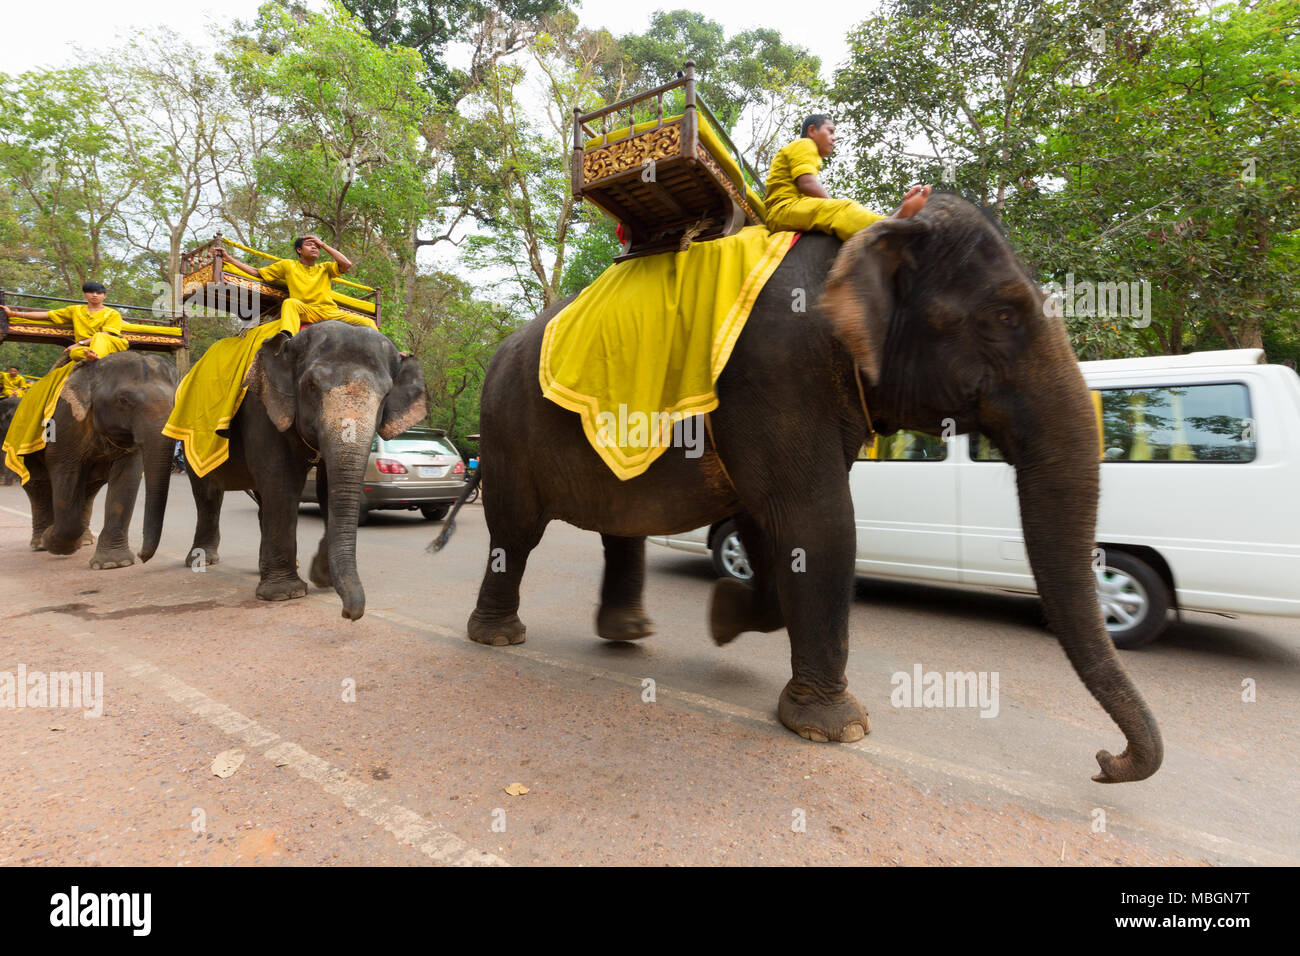 Équitation cornacs éléphants d'Asie, Angkor Thom, au Cambodge Asie Banque D'Images